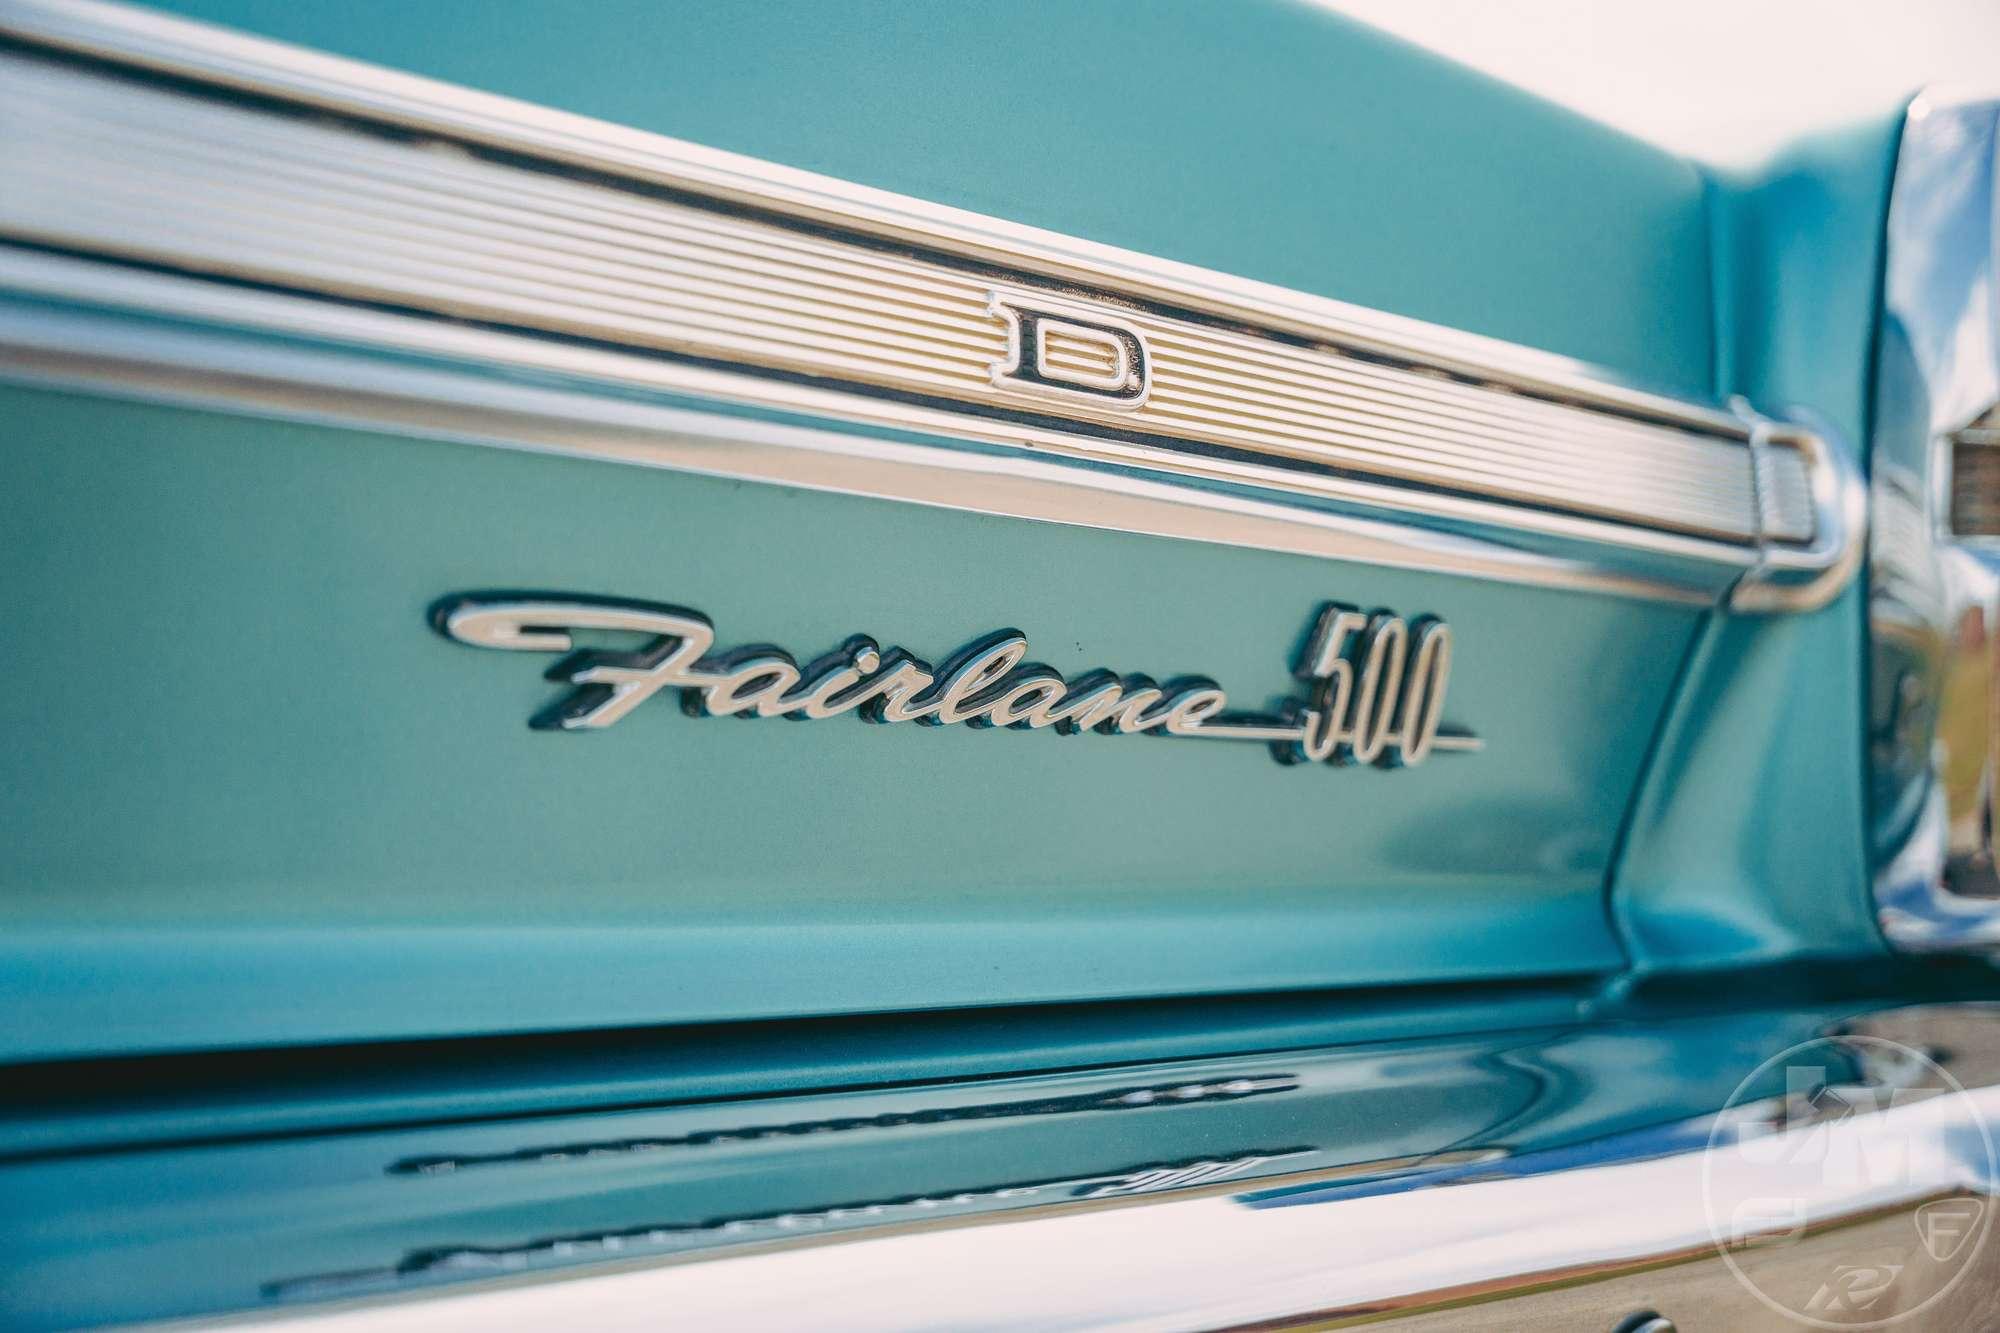 1967 FORD FAIRLANE 500 VIN: 7K35C126886